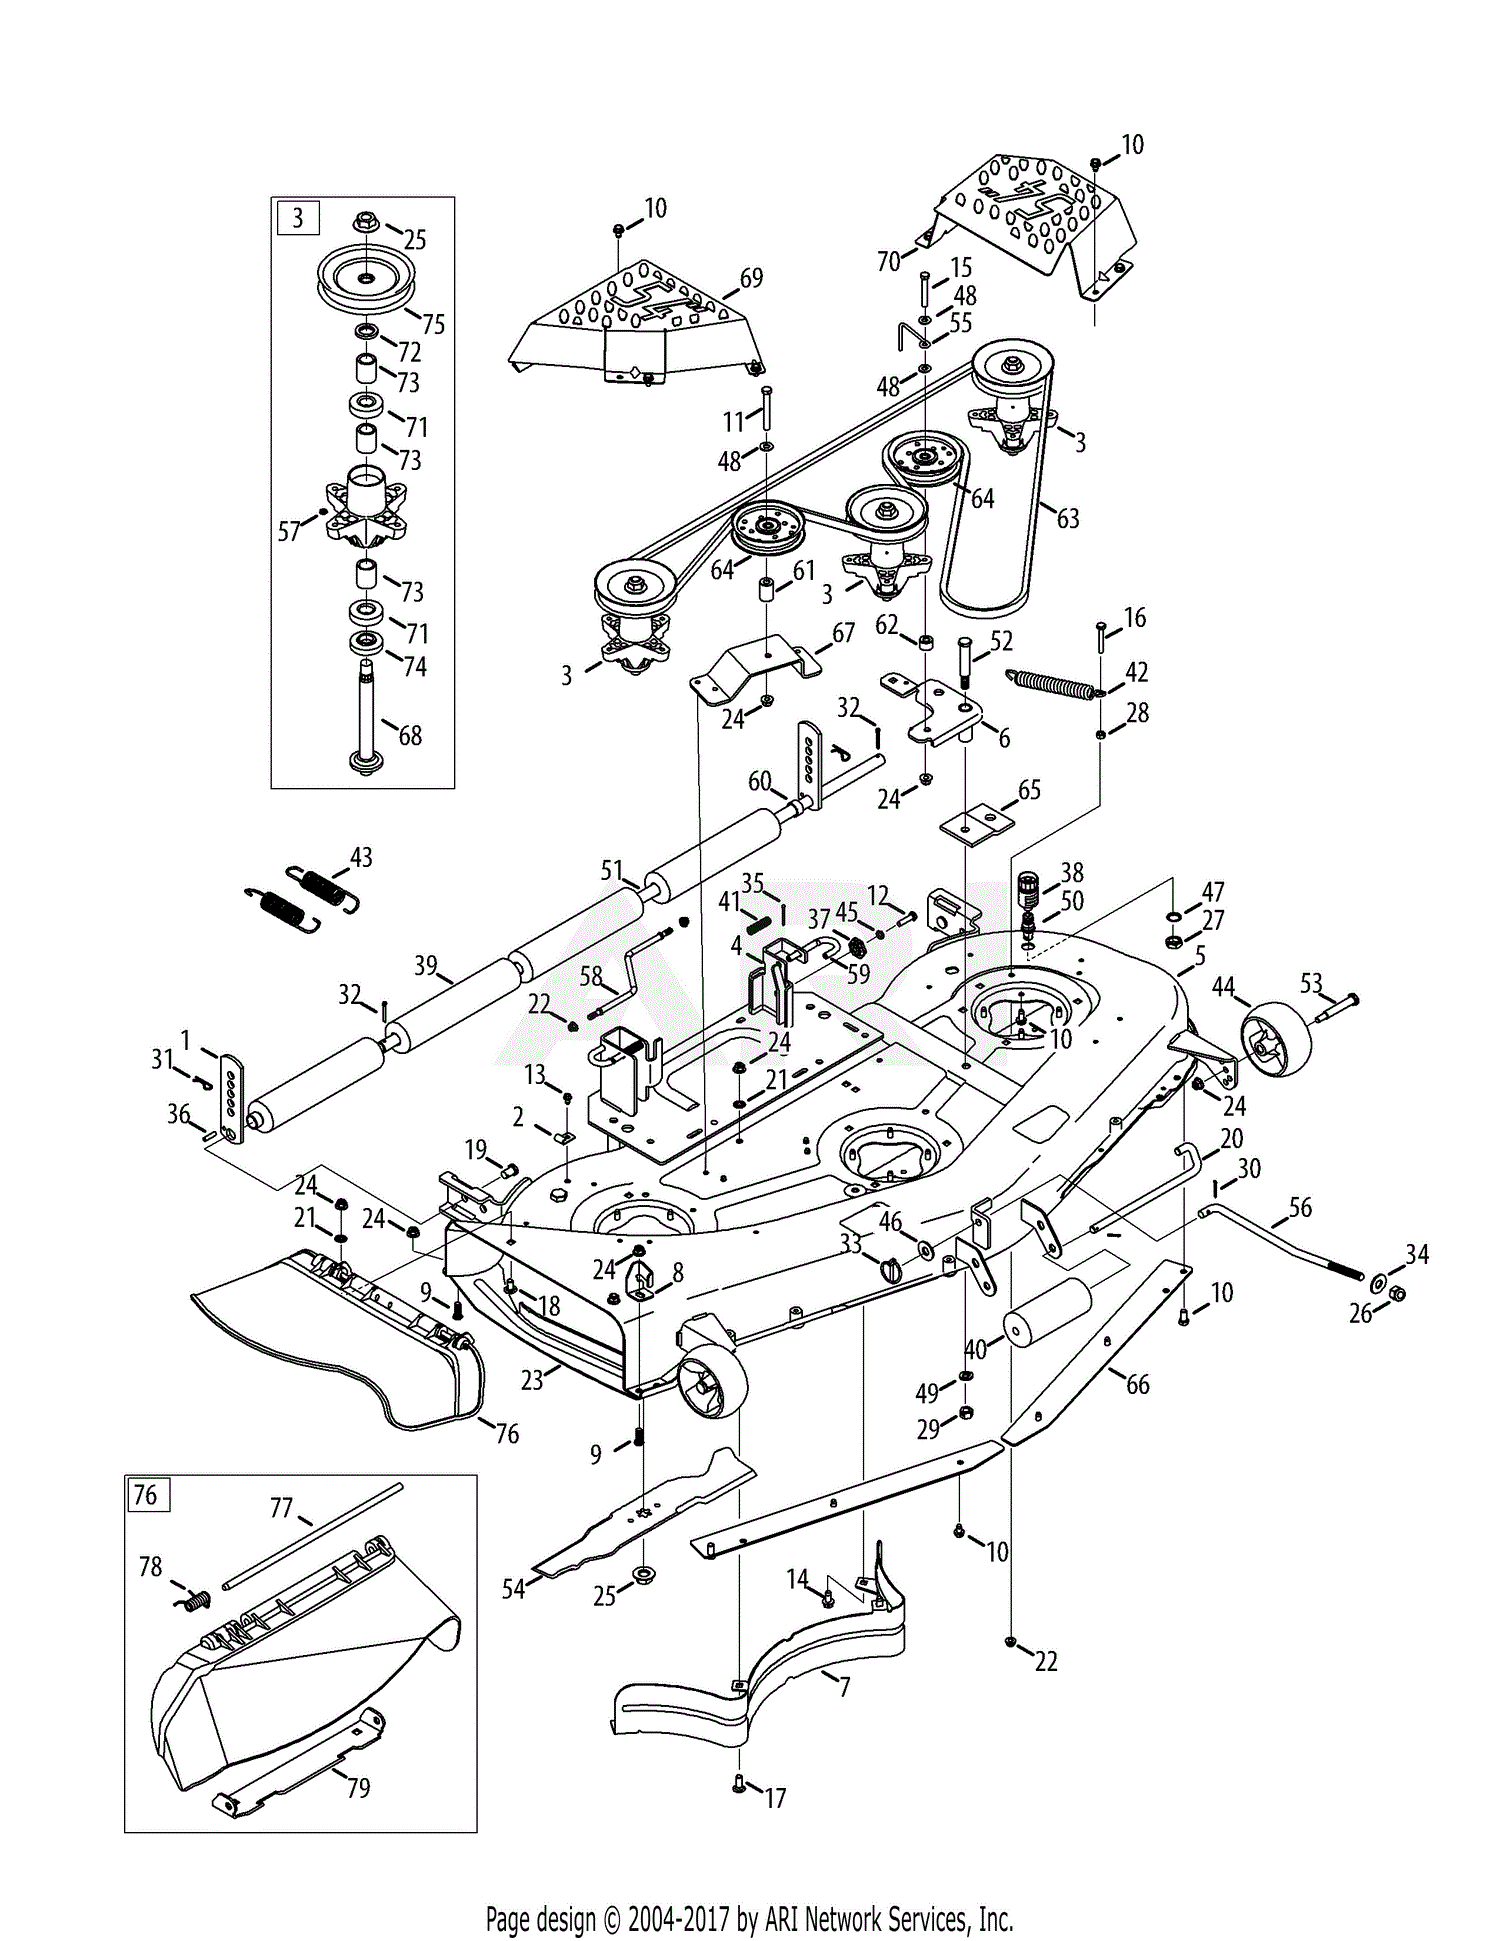 33 Craftsman 54 Mower Deck Parts Diagram Wiring Diagram List